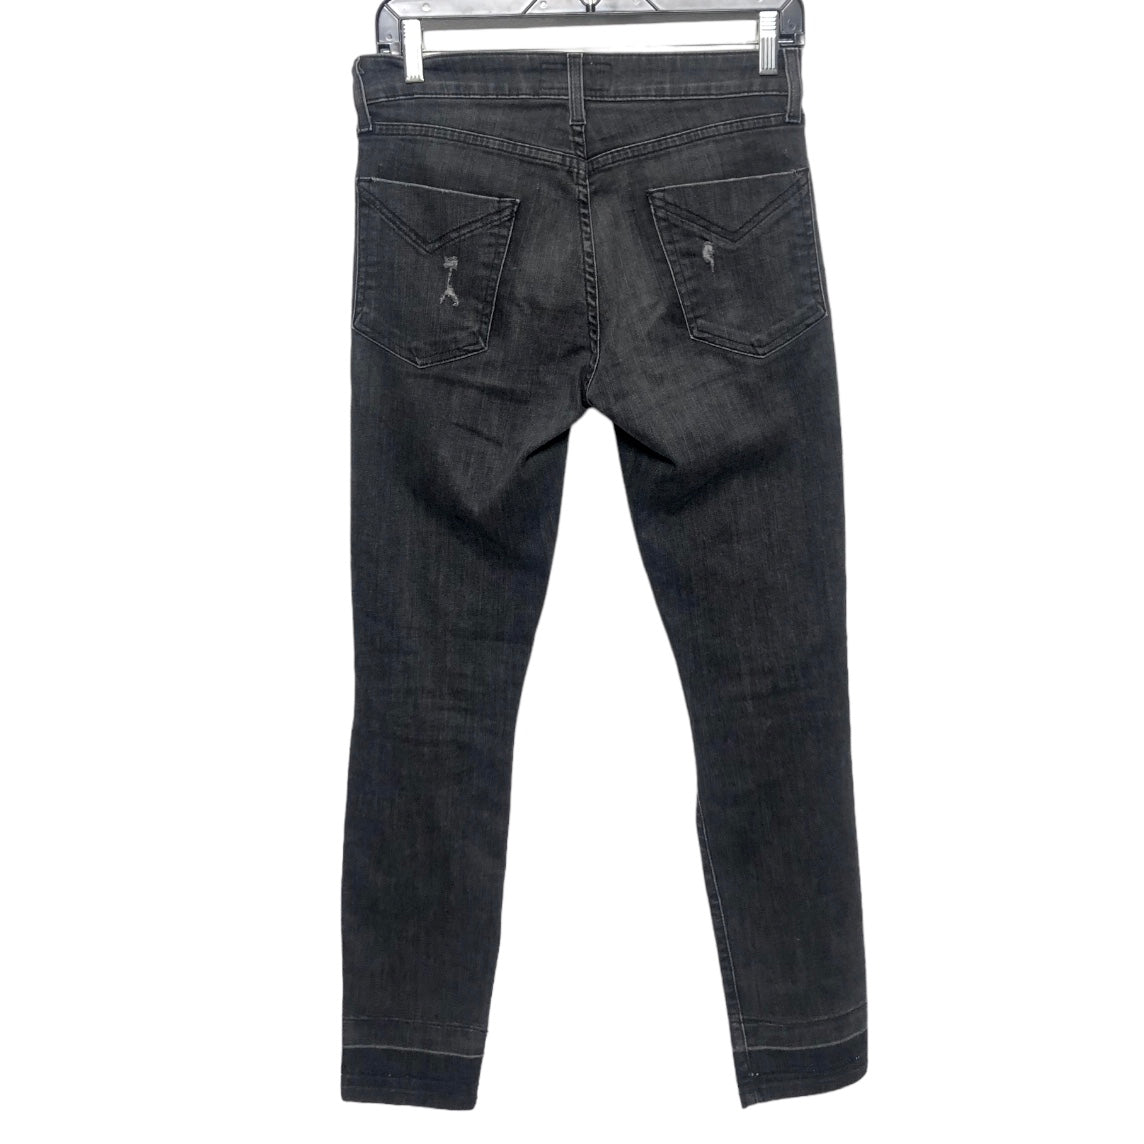 Jeans Skinny By Derek Lam  Size: 4